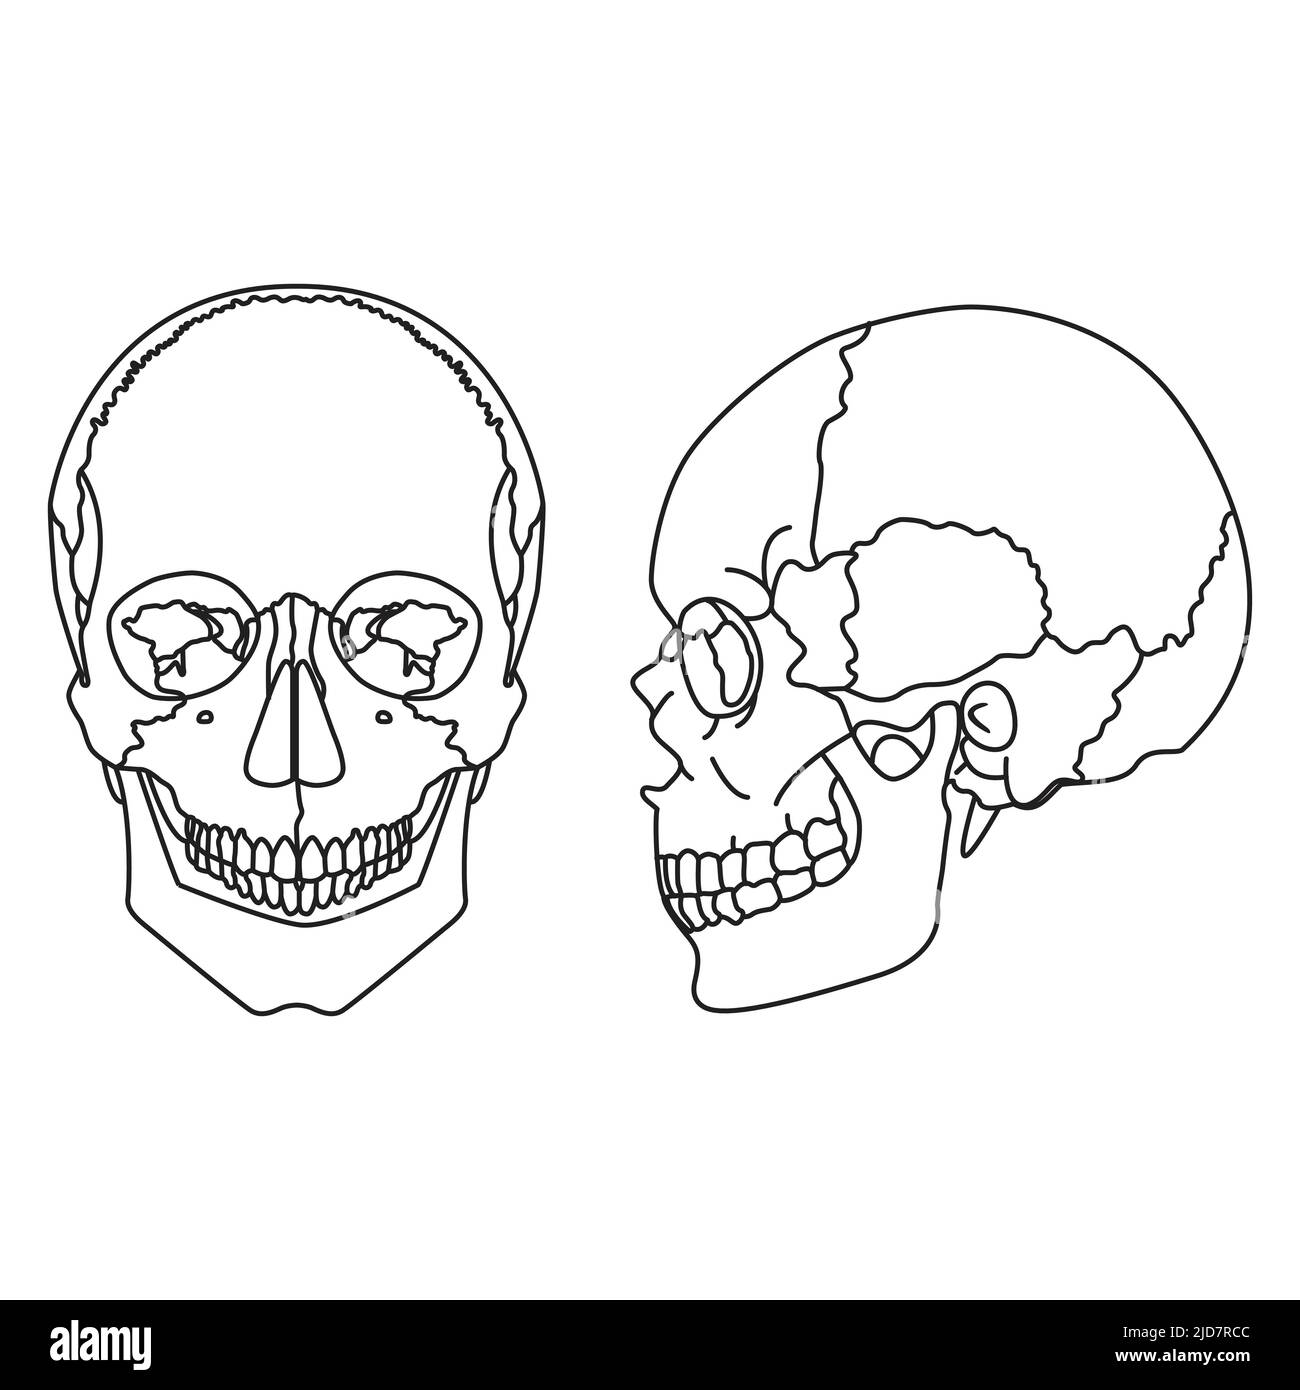 cranio umano con mandibola inferiore. vista frontale e laterale Illustrazione Vettoriale